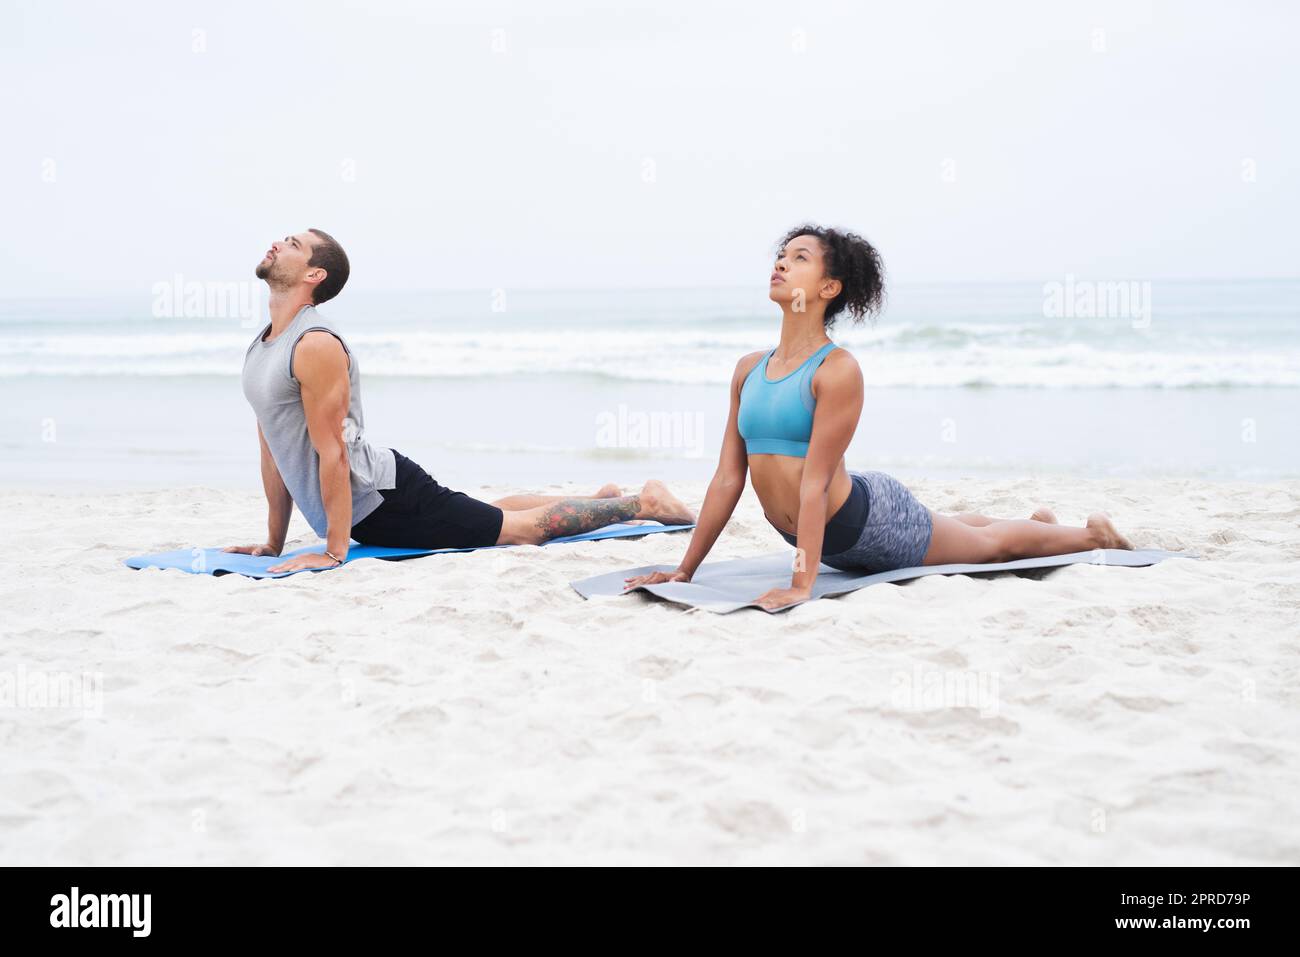 Lassen Sie die ruhige Luft Ihren Körper und Geist erfüllen. Ein junger Mann und eine junge Frau üben gemeinsam am Strand Yoga. Stockfoto